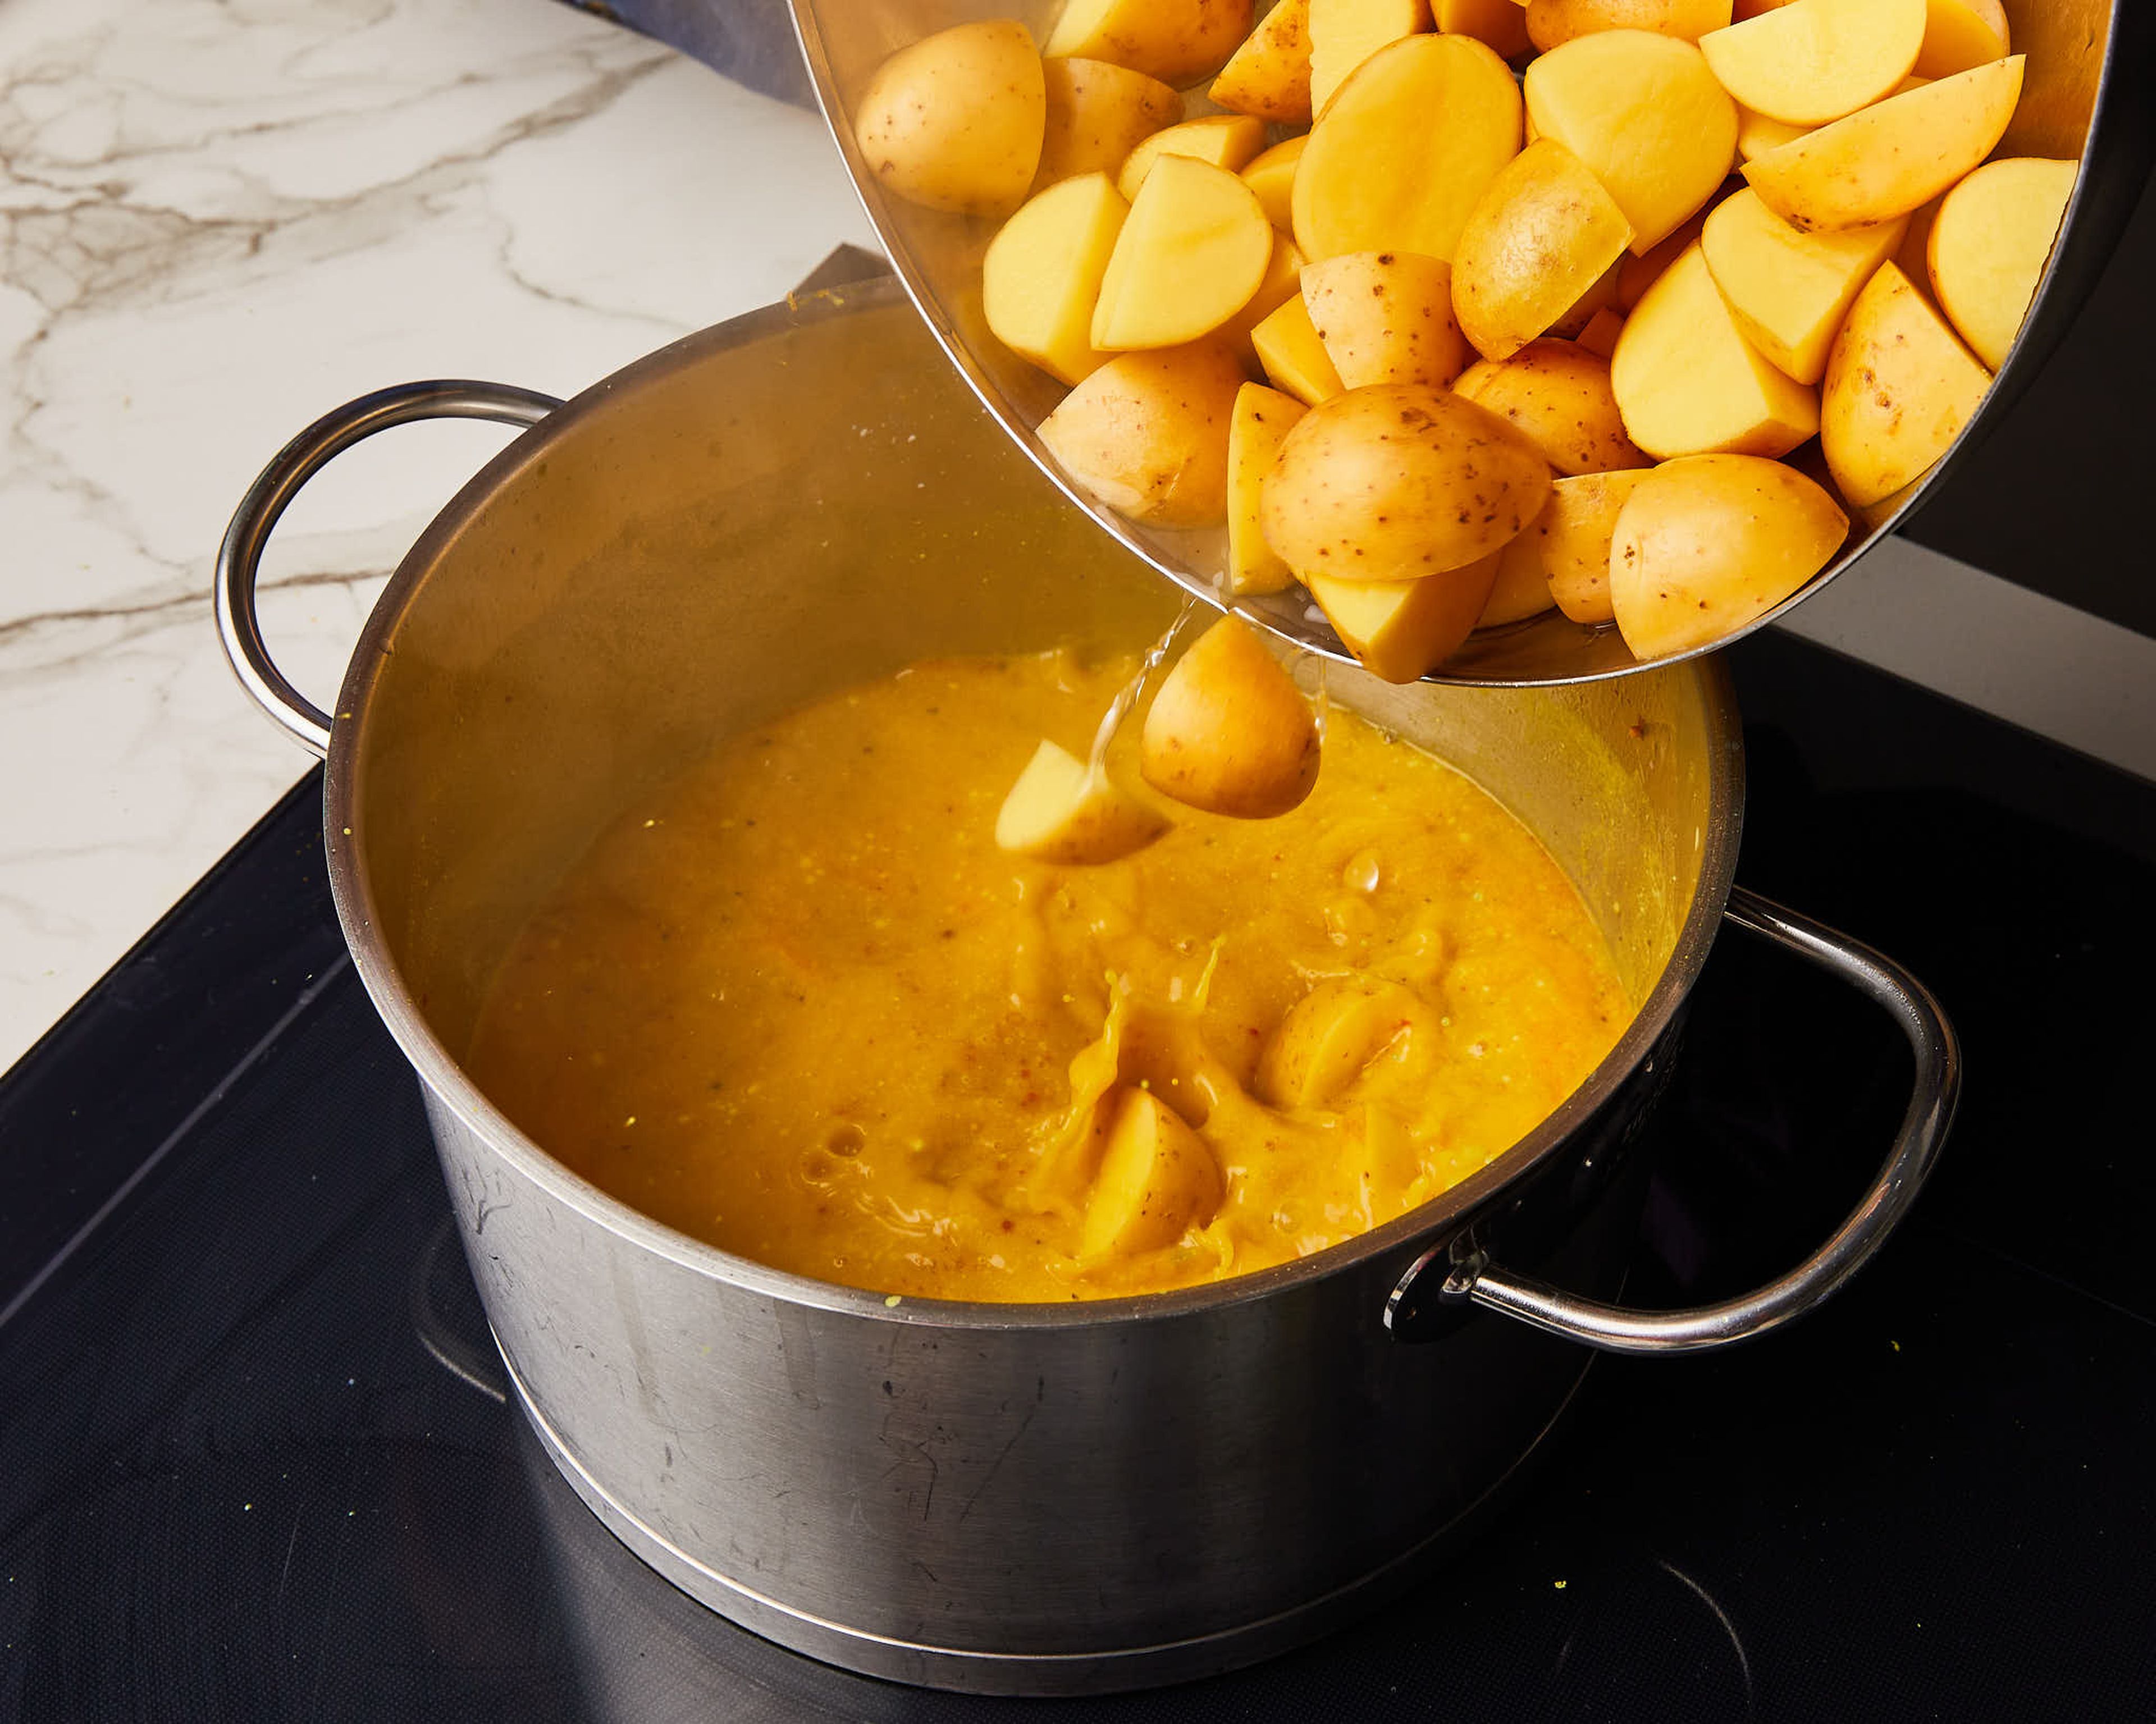 Kokosmilch, Wasser, Limettenabrieb und -saft, Salz und Pfeffer hinzufügen. Kartoffeln einrühren, abdecken und zum Kochen bringen. Dann die Hitze reduzieren und ca. 20–25 Min. köcheln lassen.